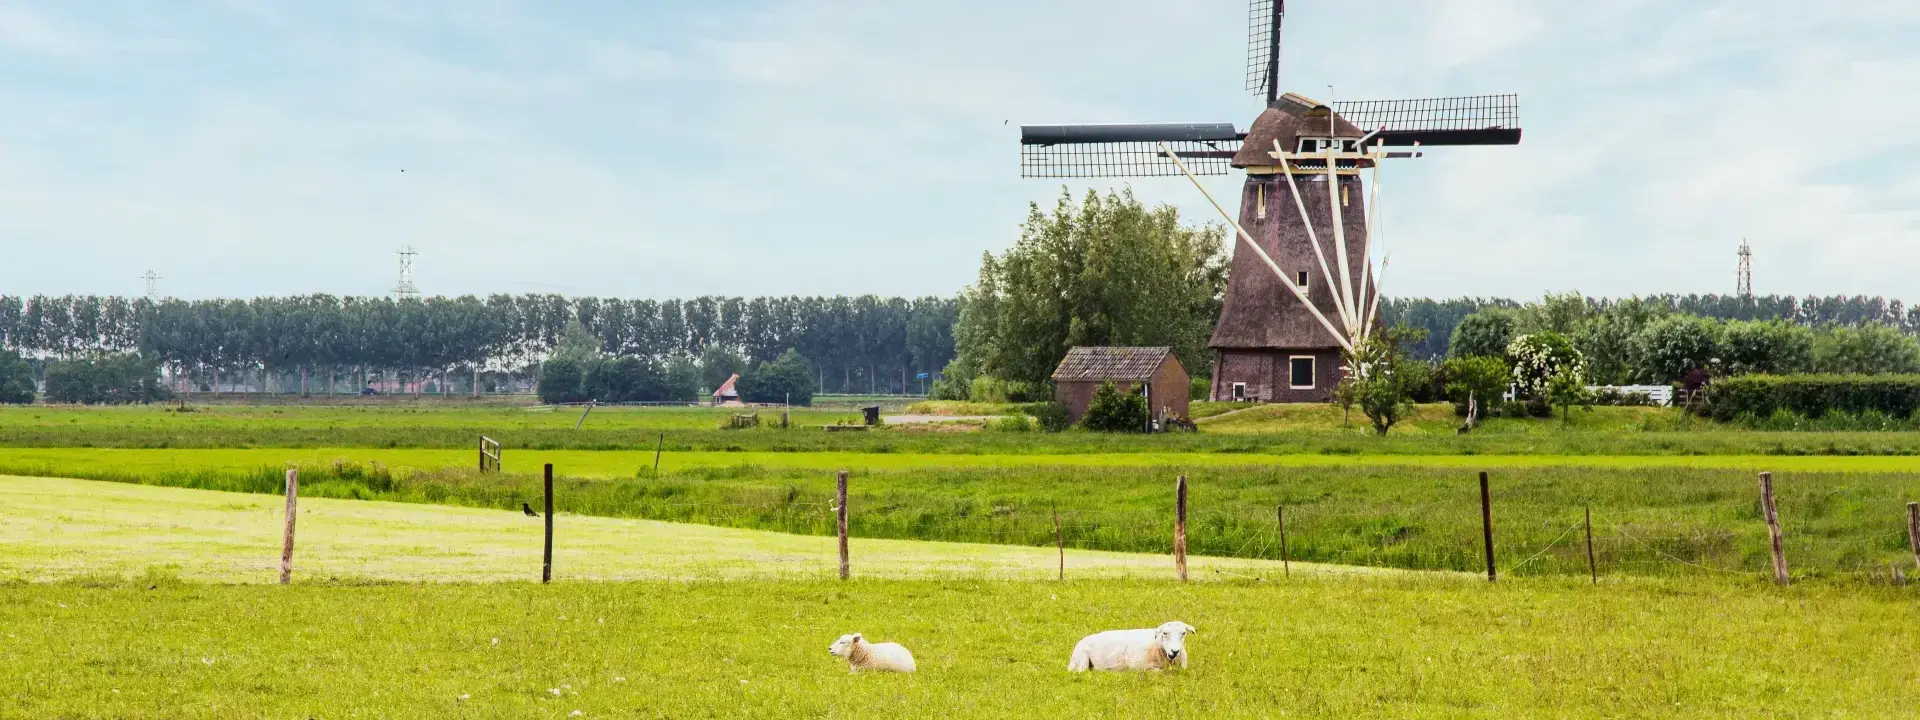 Friesland Netherlands